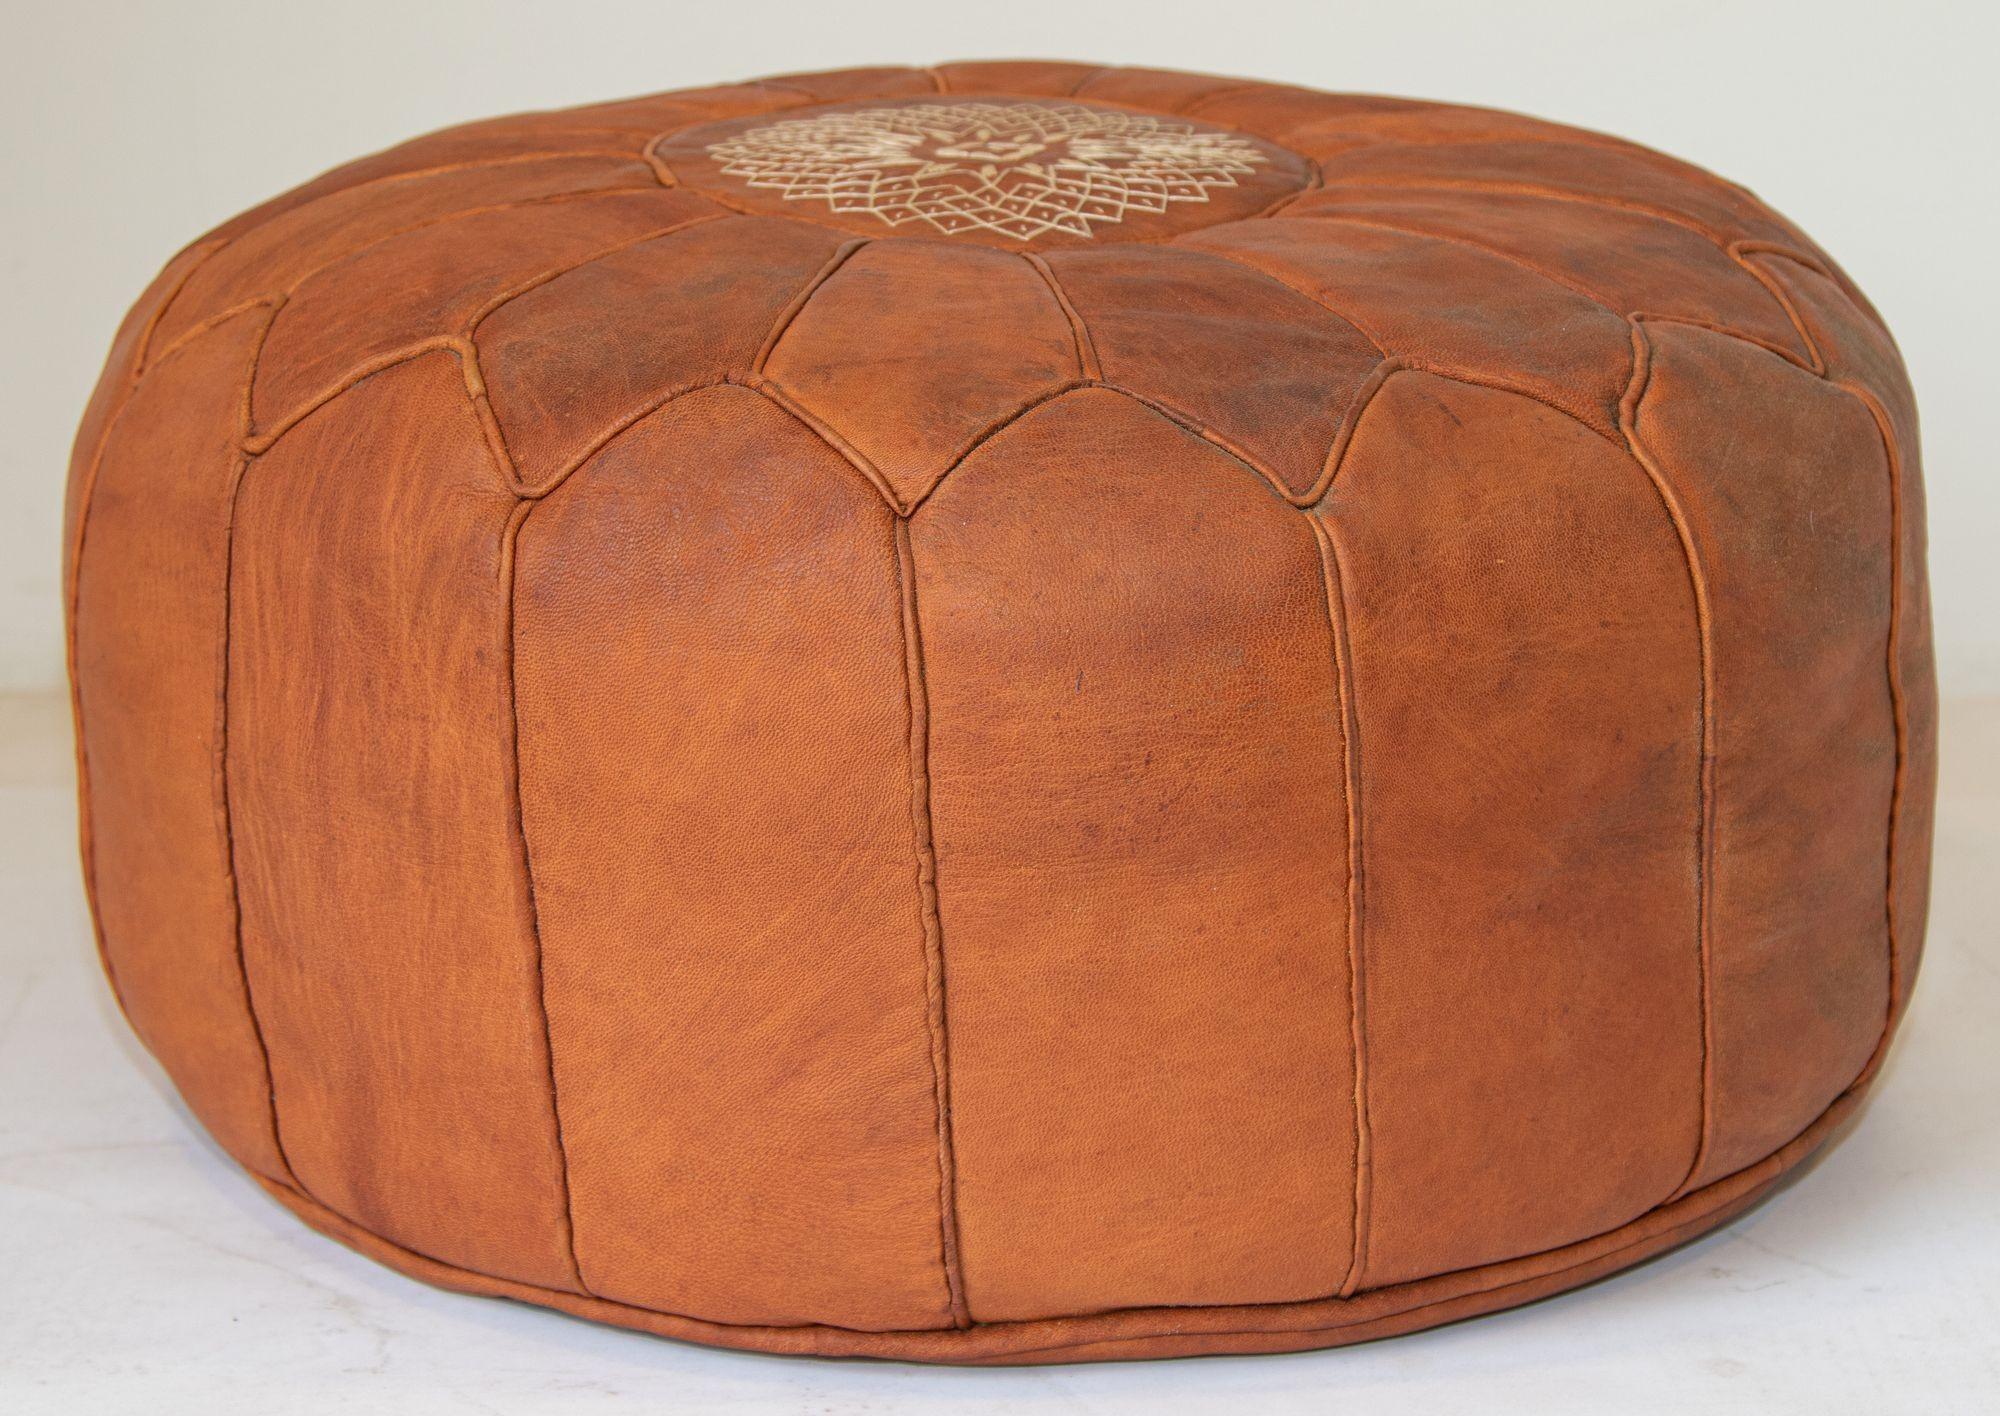 Vintage Marokkanischer Hocker aus braunem Leder.
Großer runder marokkanischer Vintage-Lederhocker, handgefertigt aus braunem Kamelleder.
Handgearbeitete Ottomane aus marokkanischem Leder, oben mit einem maurischen Muster bestickt, von